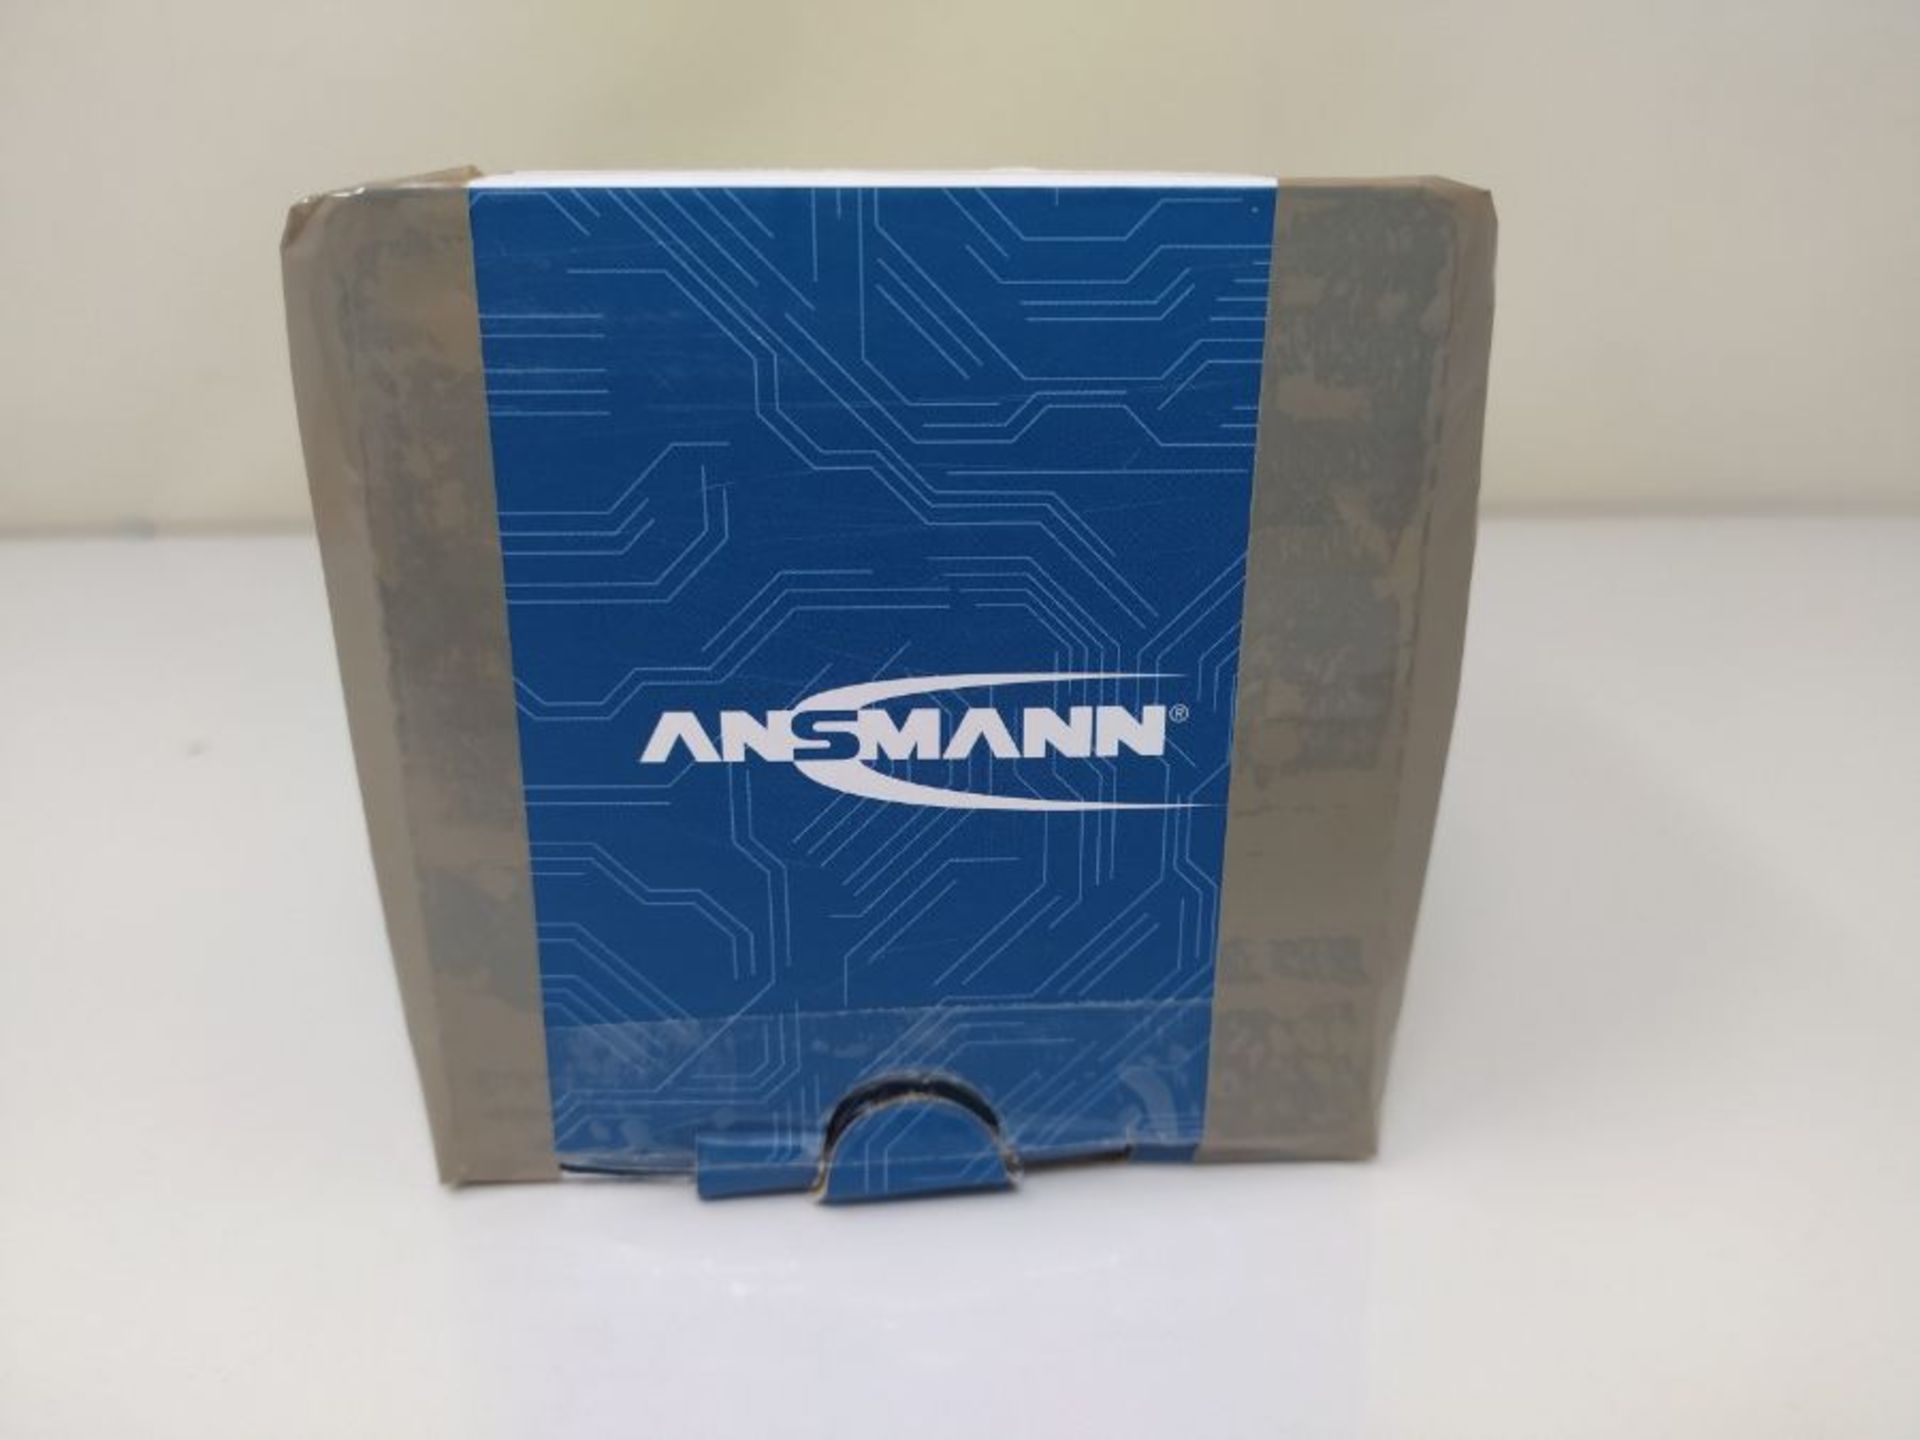 Ansmann 1260-0001 Steckdosen-Timer analog Timer-Funktion - Image 2 of 3